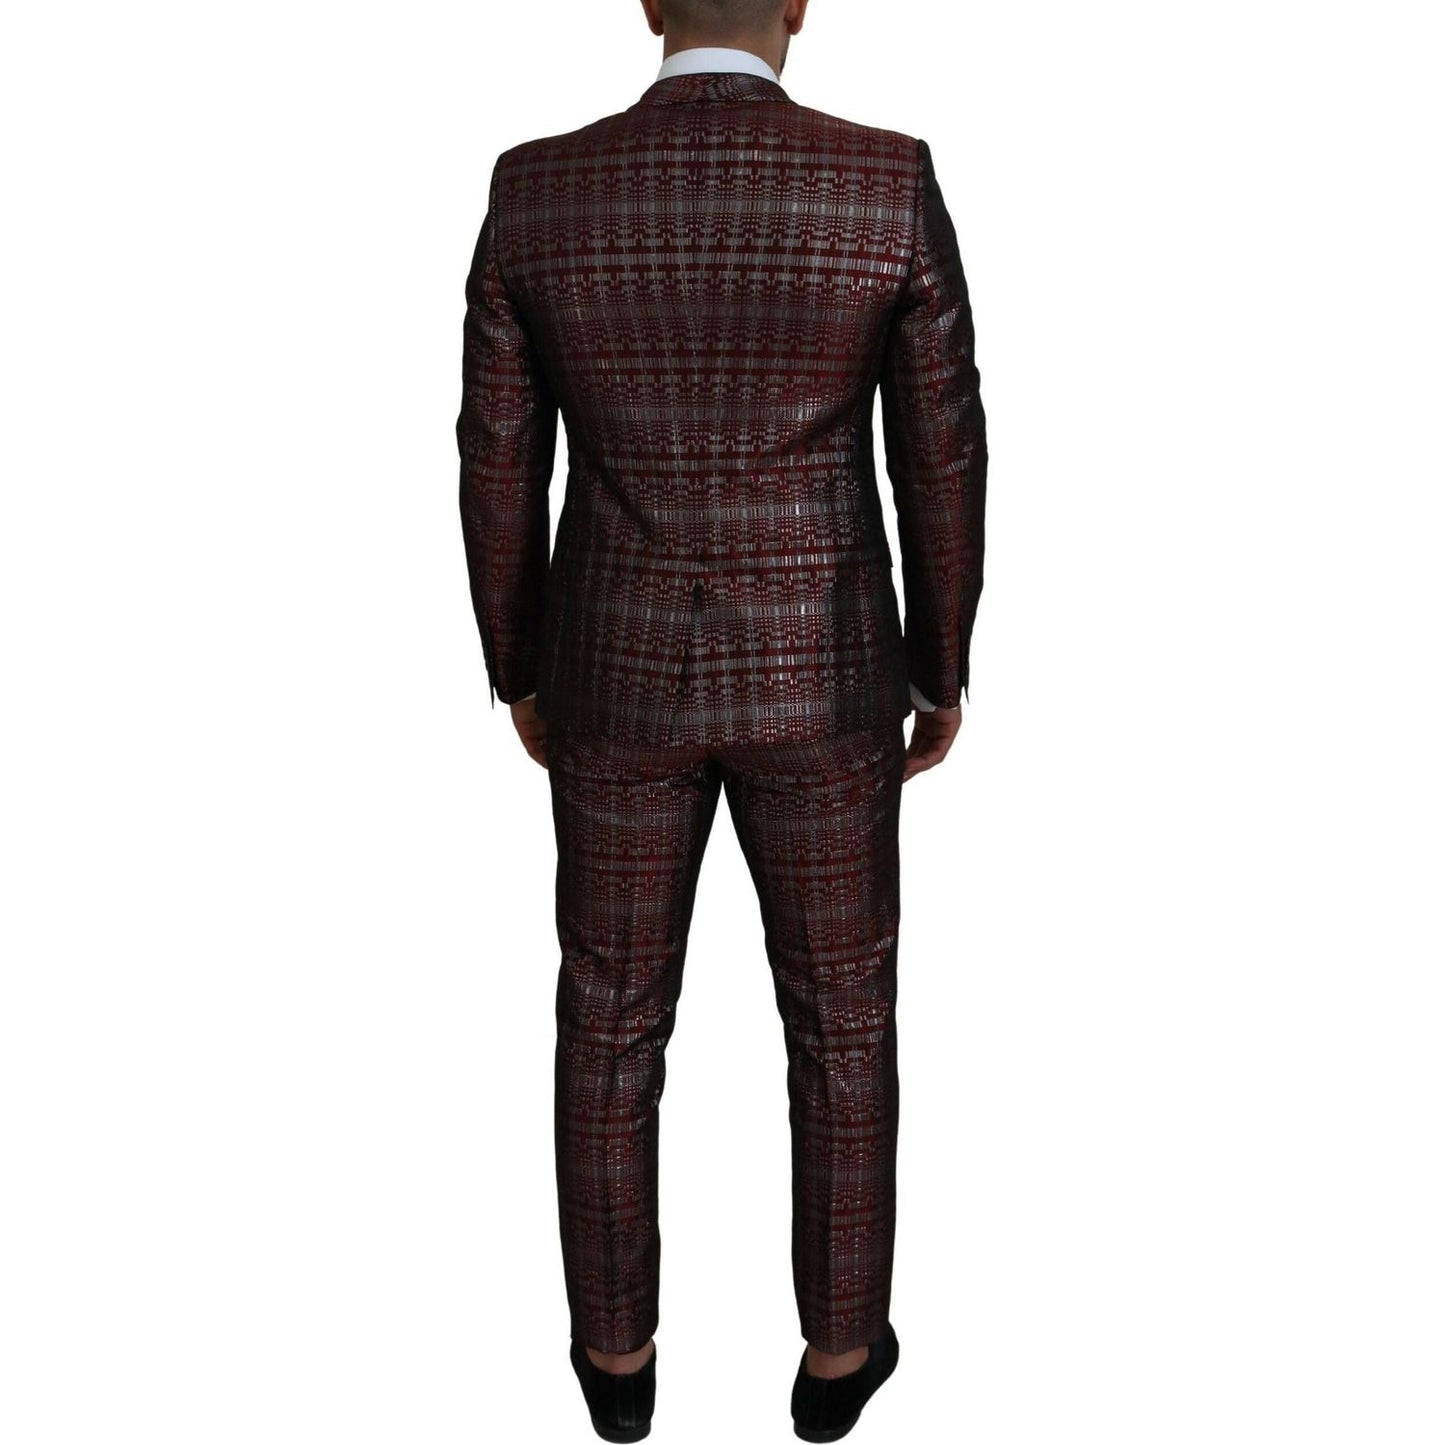 Dolce & Gabbana Bordeaux Fantasy Slim Fit Two-Piece Suit bordeaux-silver-gold-slim-fit-suit IMG_8790-scaled-9e7d92e7-e65.jpg